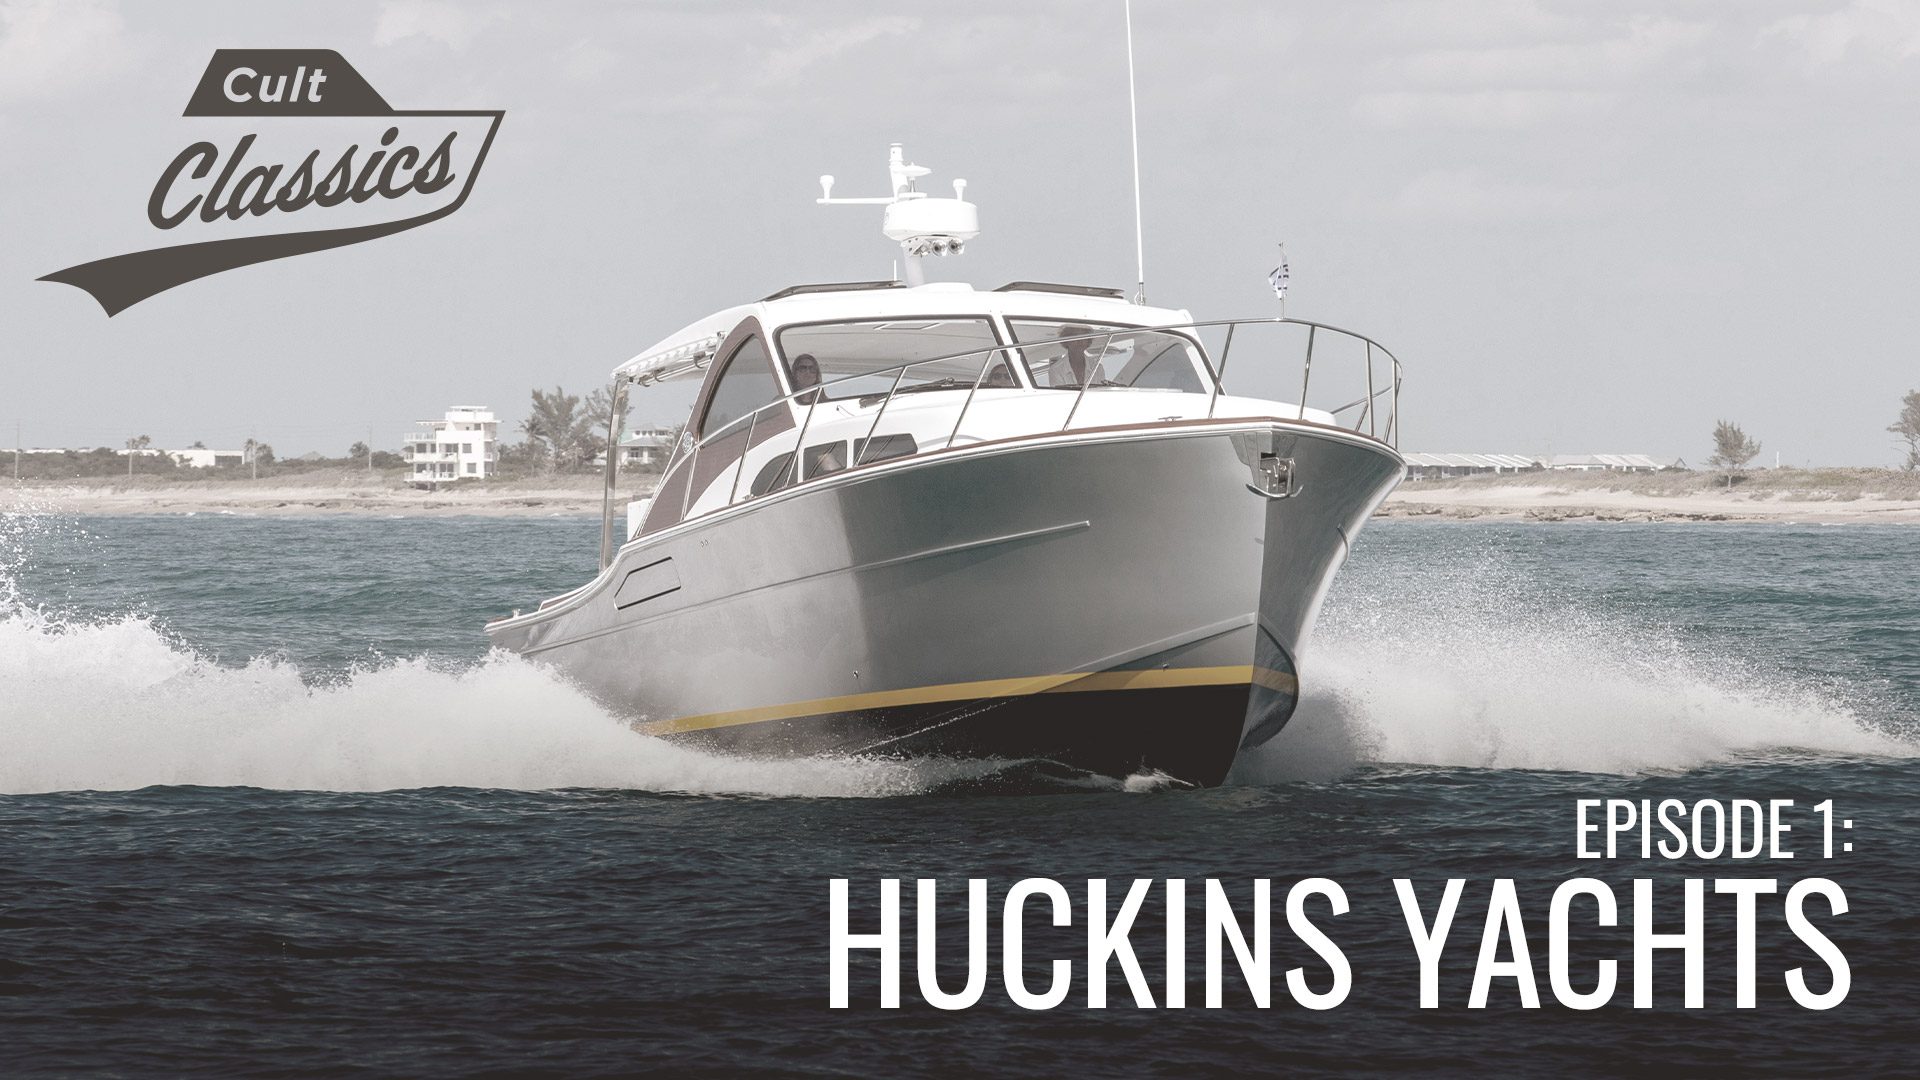 Cult Classics Episode 1 Huckins Yachts